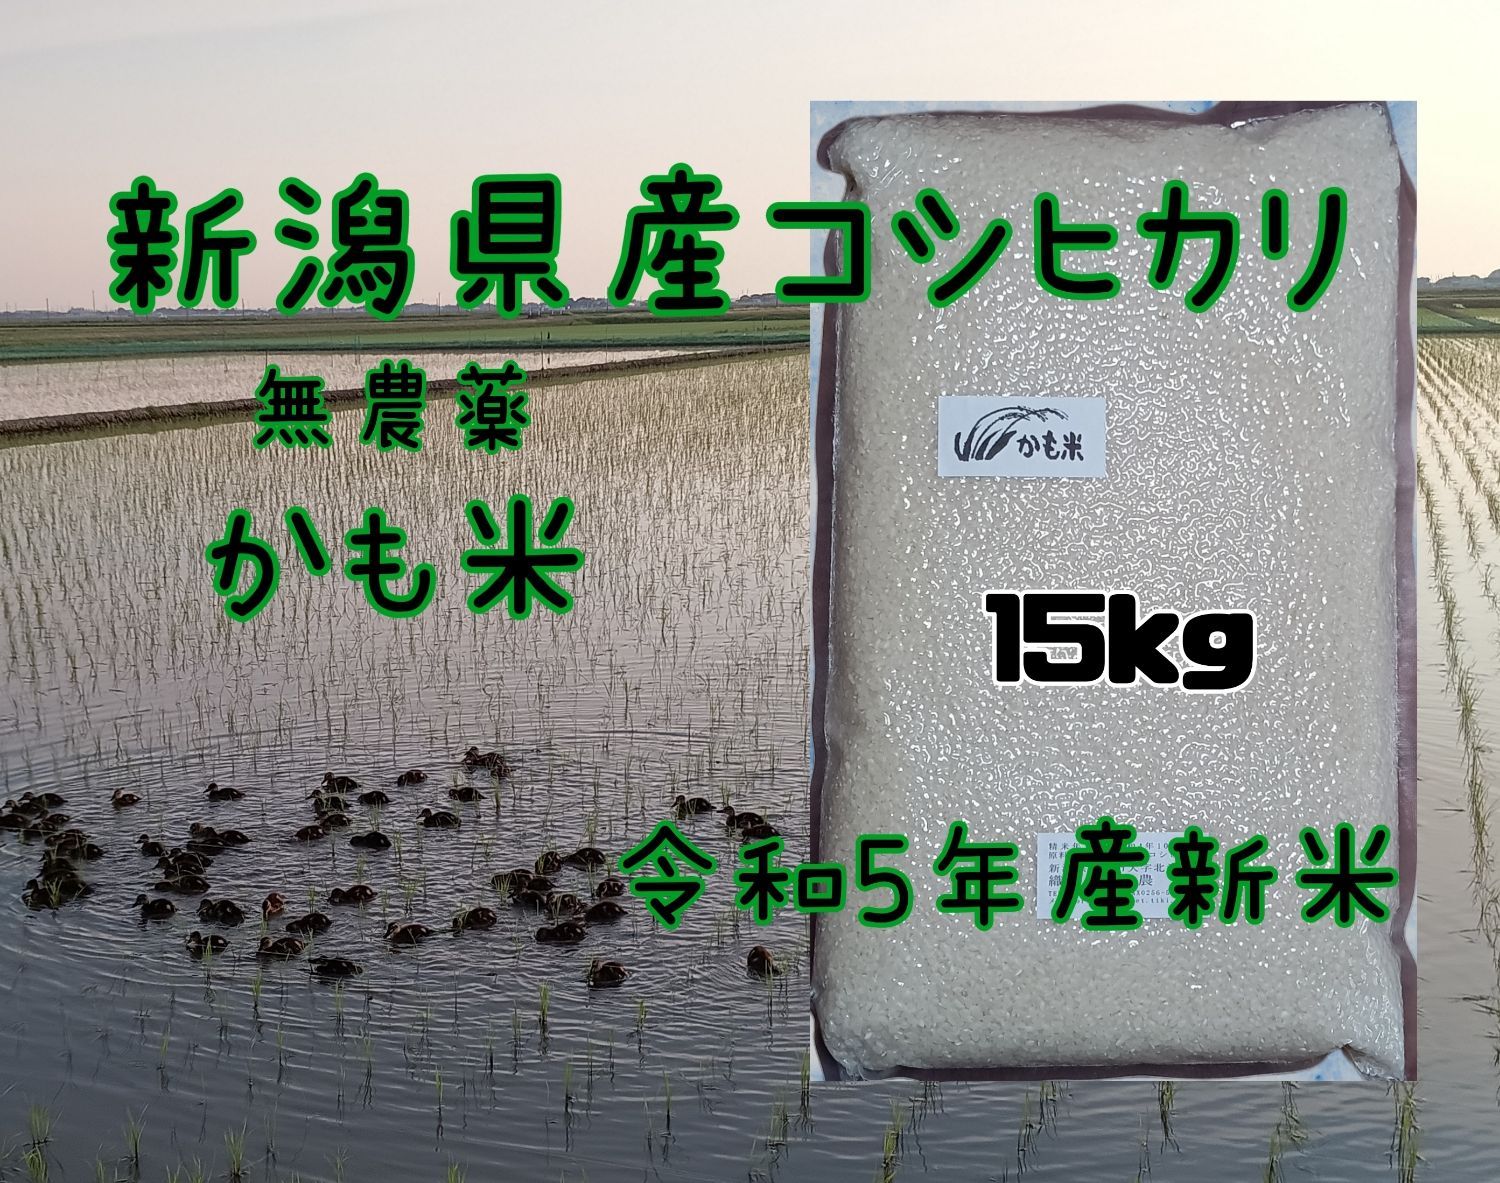 無農薬米新潟県産コシヒカリ15k - メルカリ